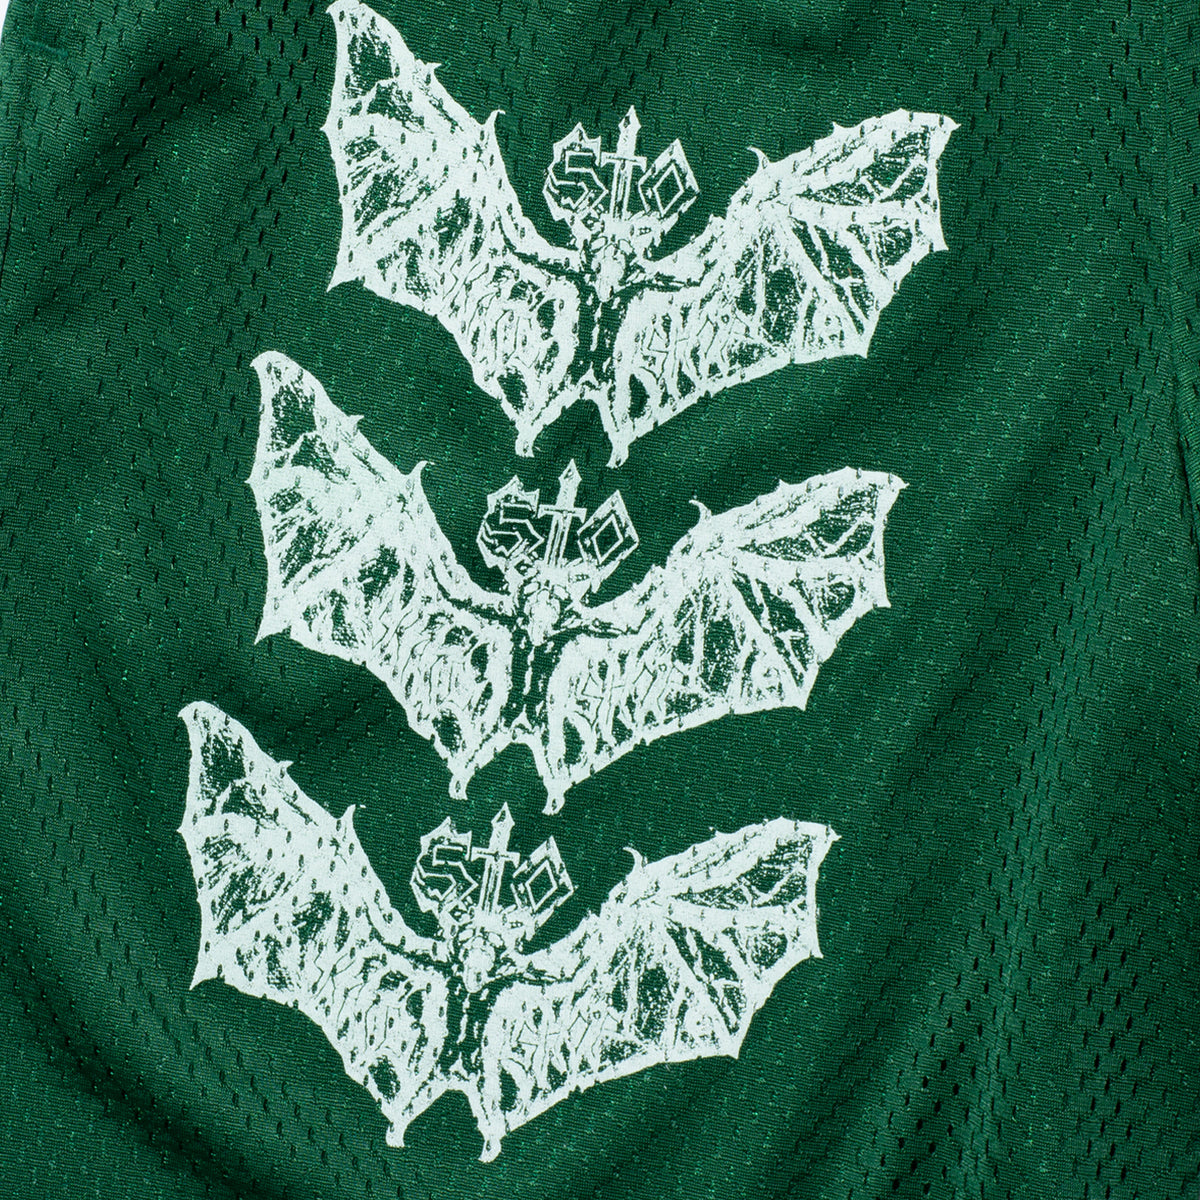 Bat Shorts (Green/White)